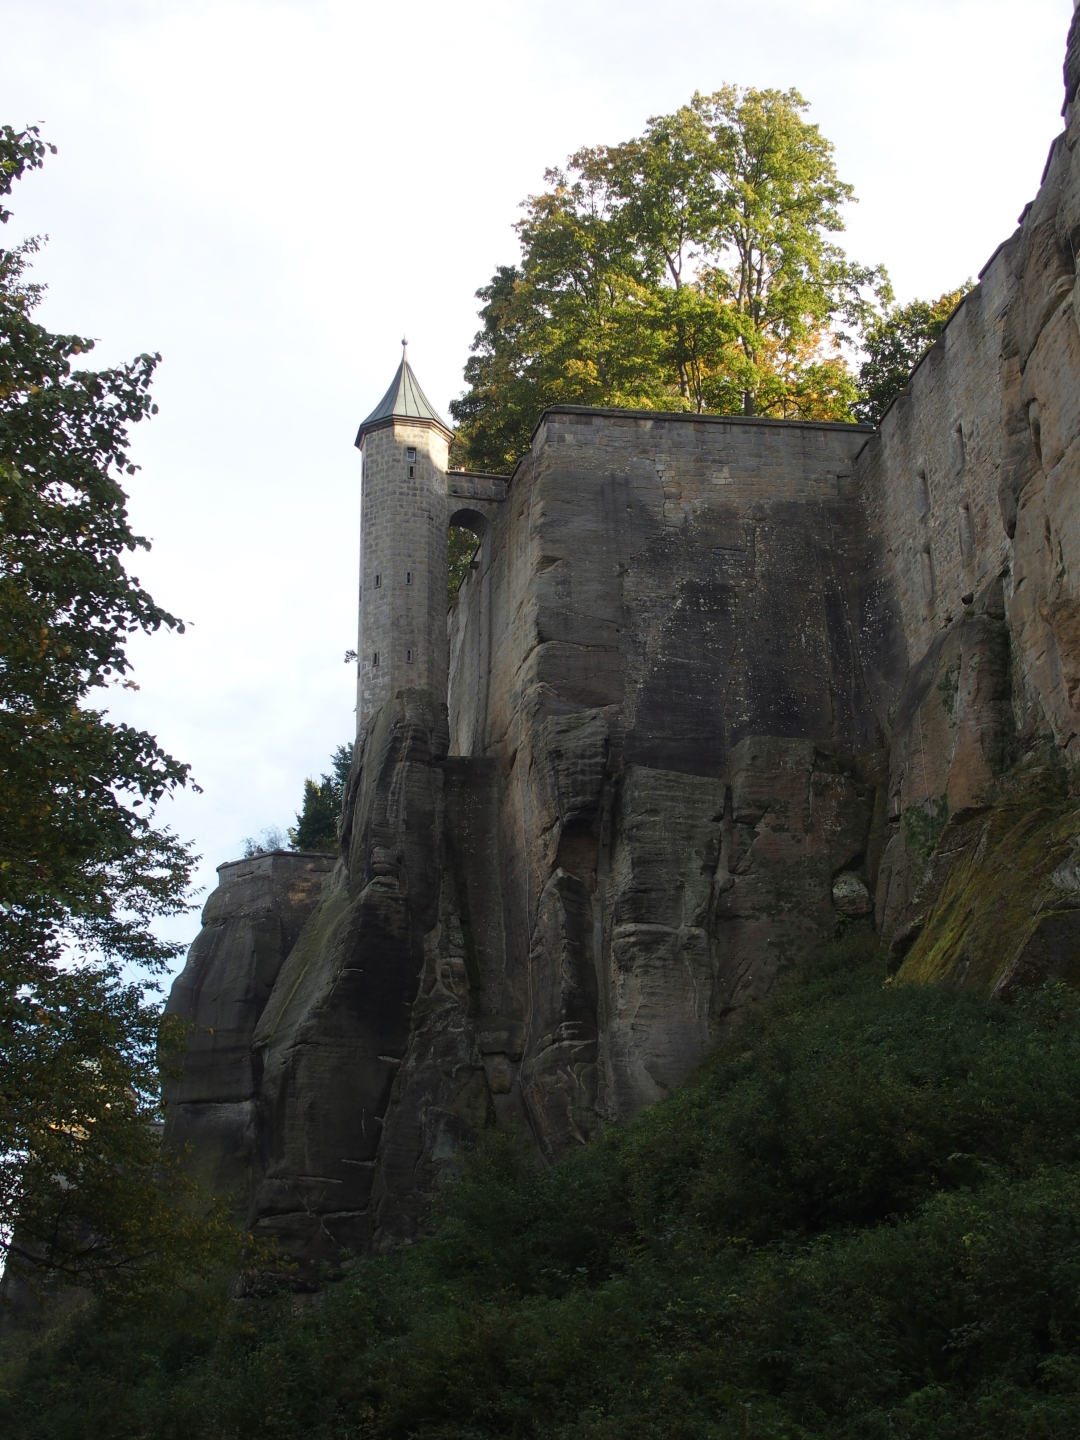 Der Weinkeller. Das Riesenfass ist nicht mehr da. Der Patrouilleweg führt außen an den steilen Felsen entlang um die Festung herum.